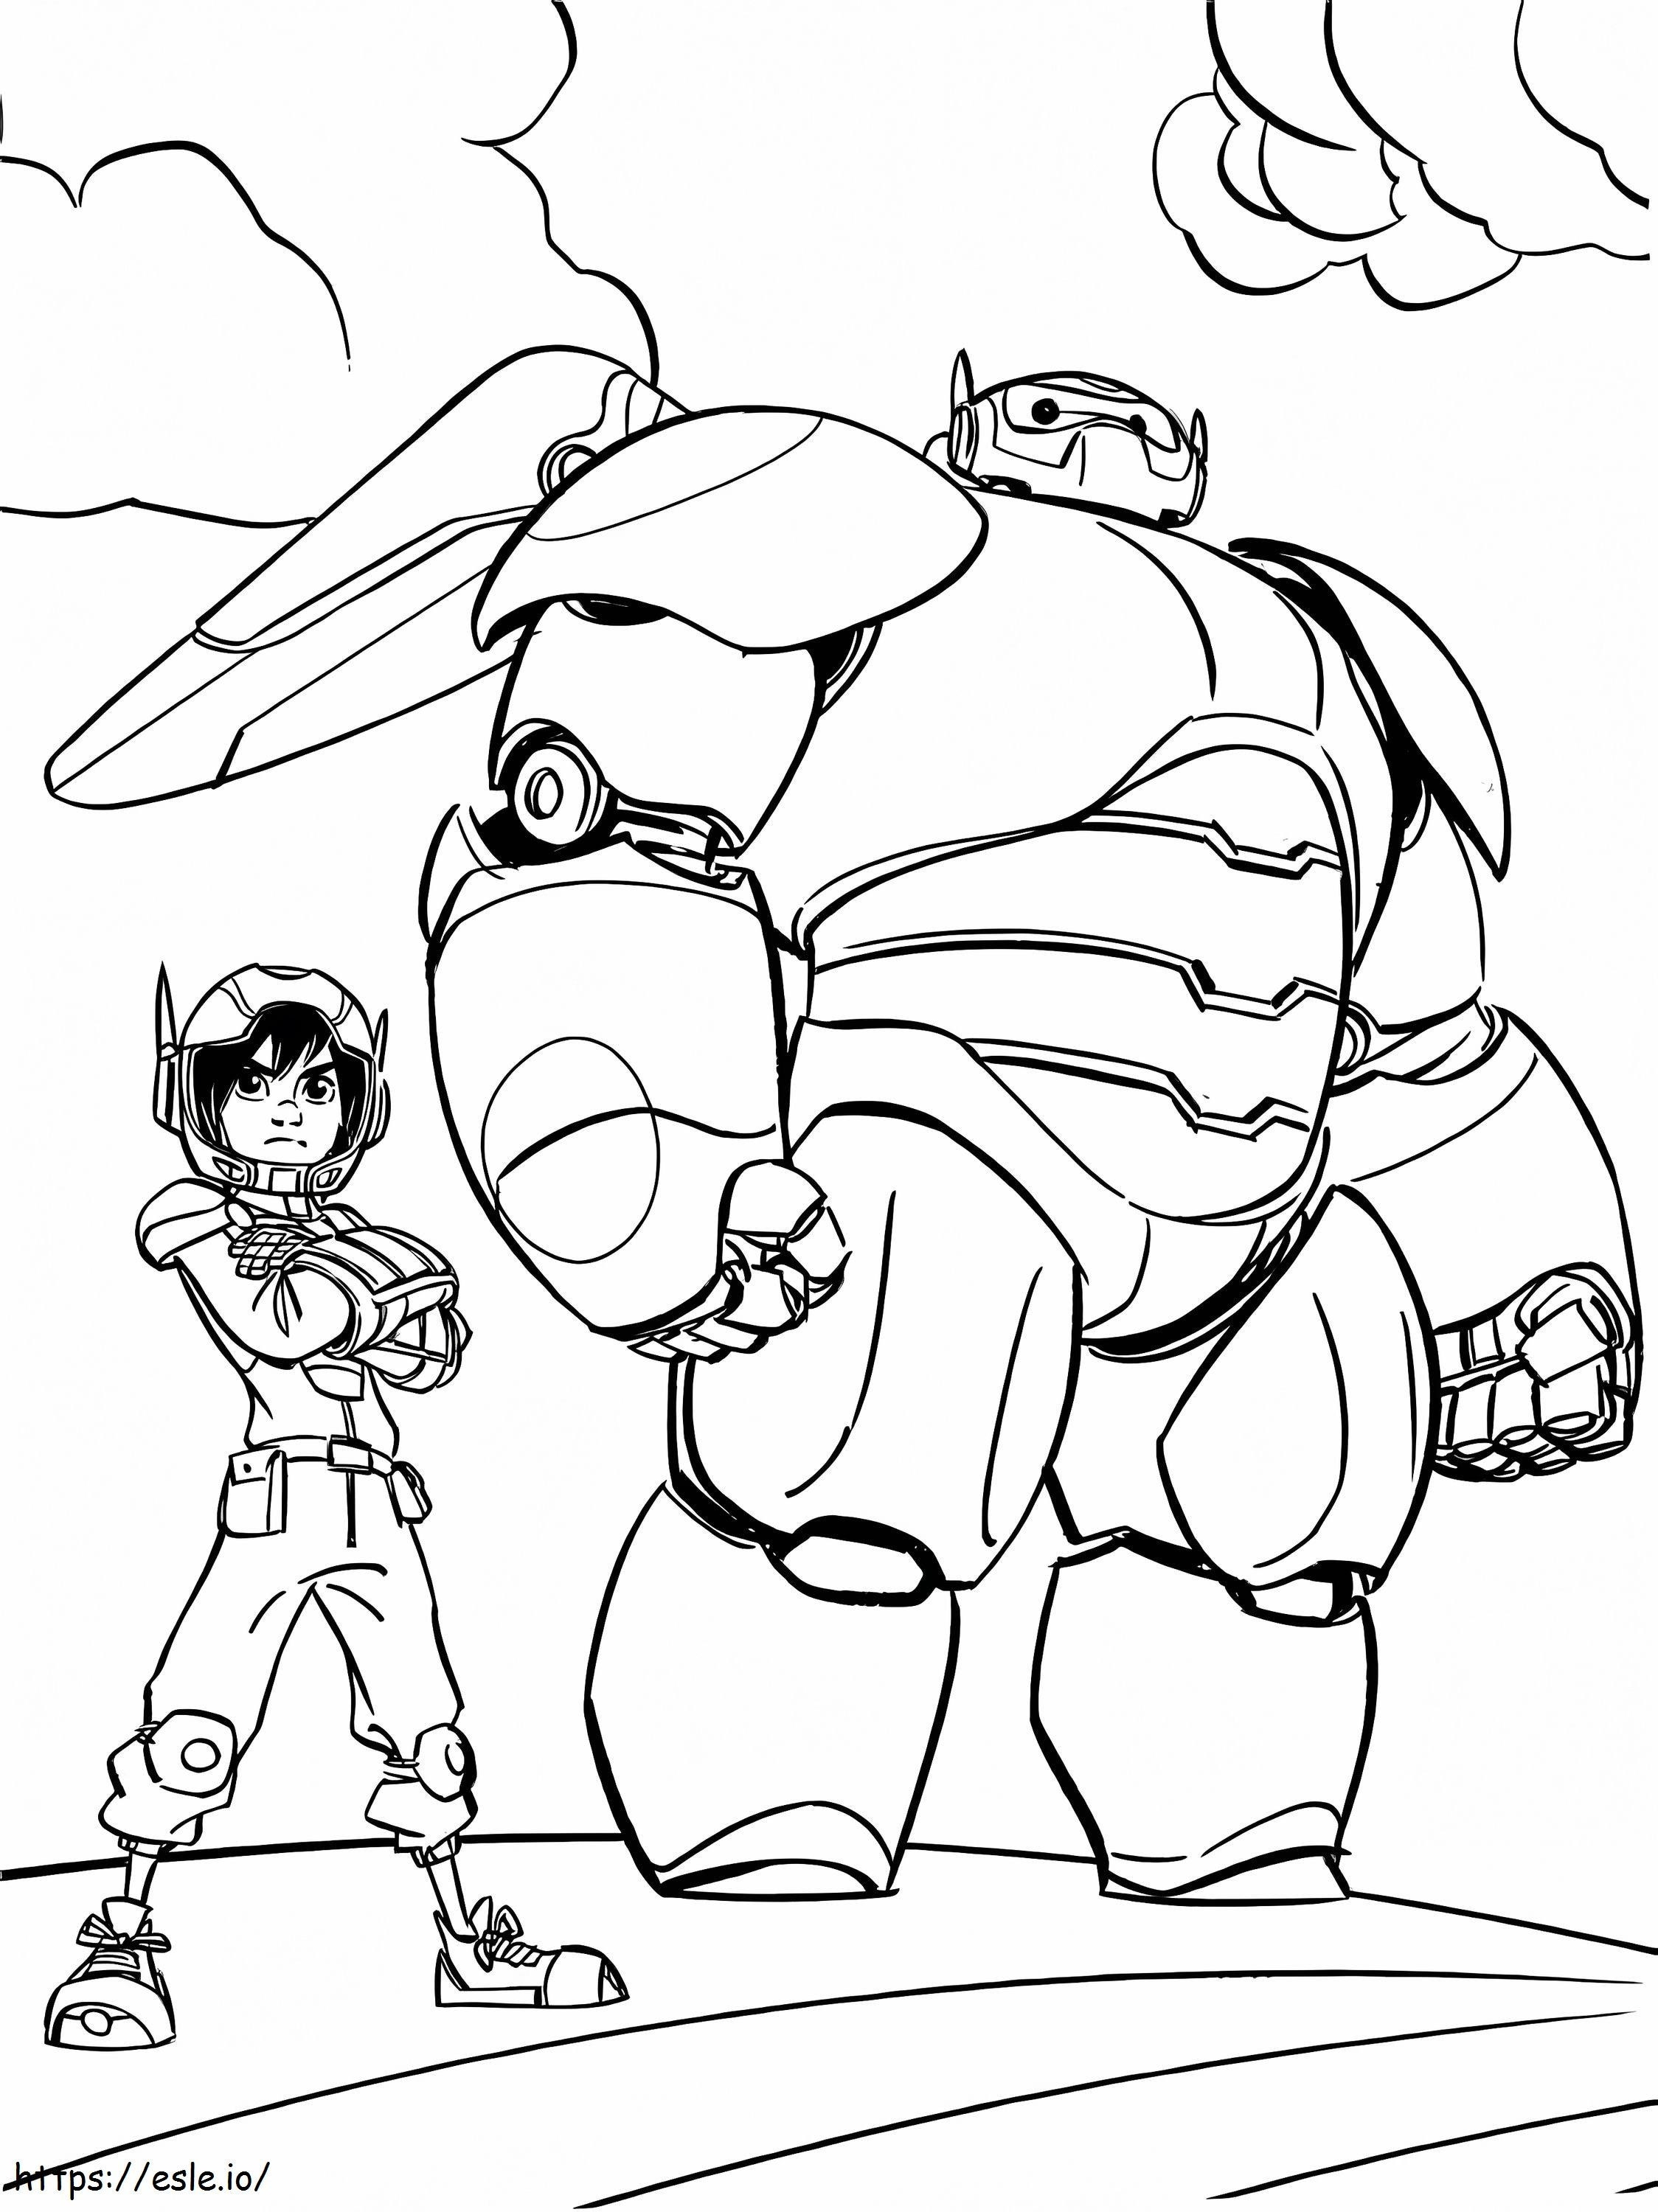 Frio Baymax And Hiro coloring page